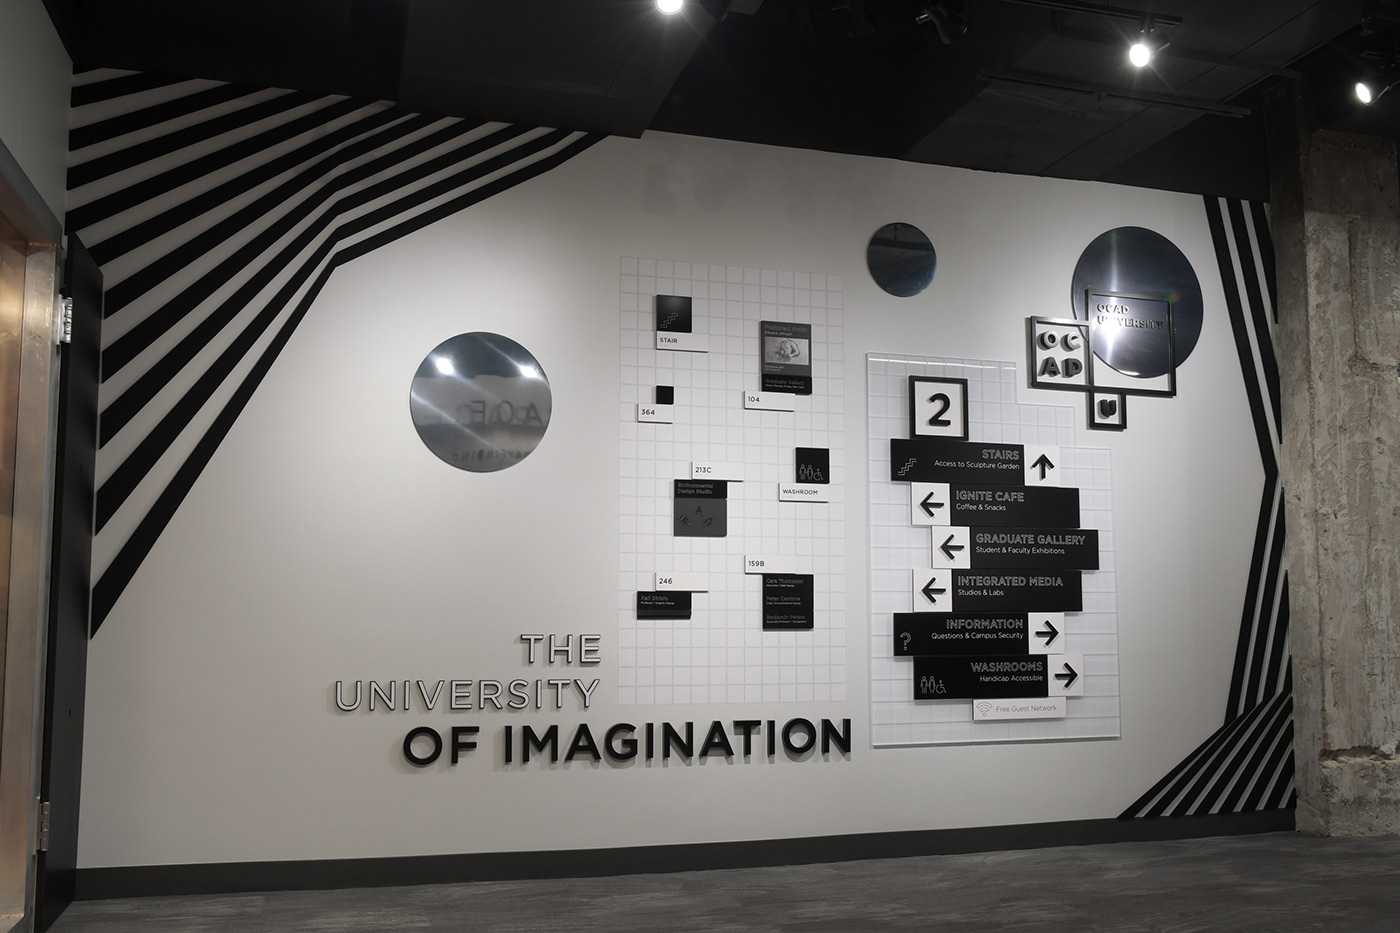 Signage design wayfinding black and white showroom tradeshow ocad university